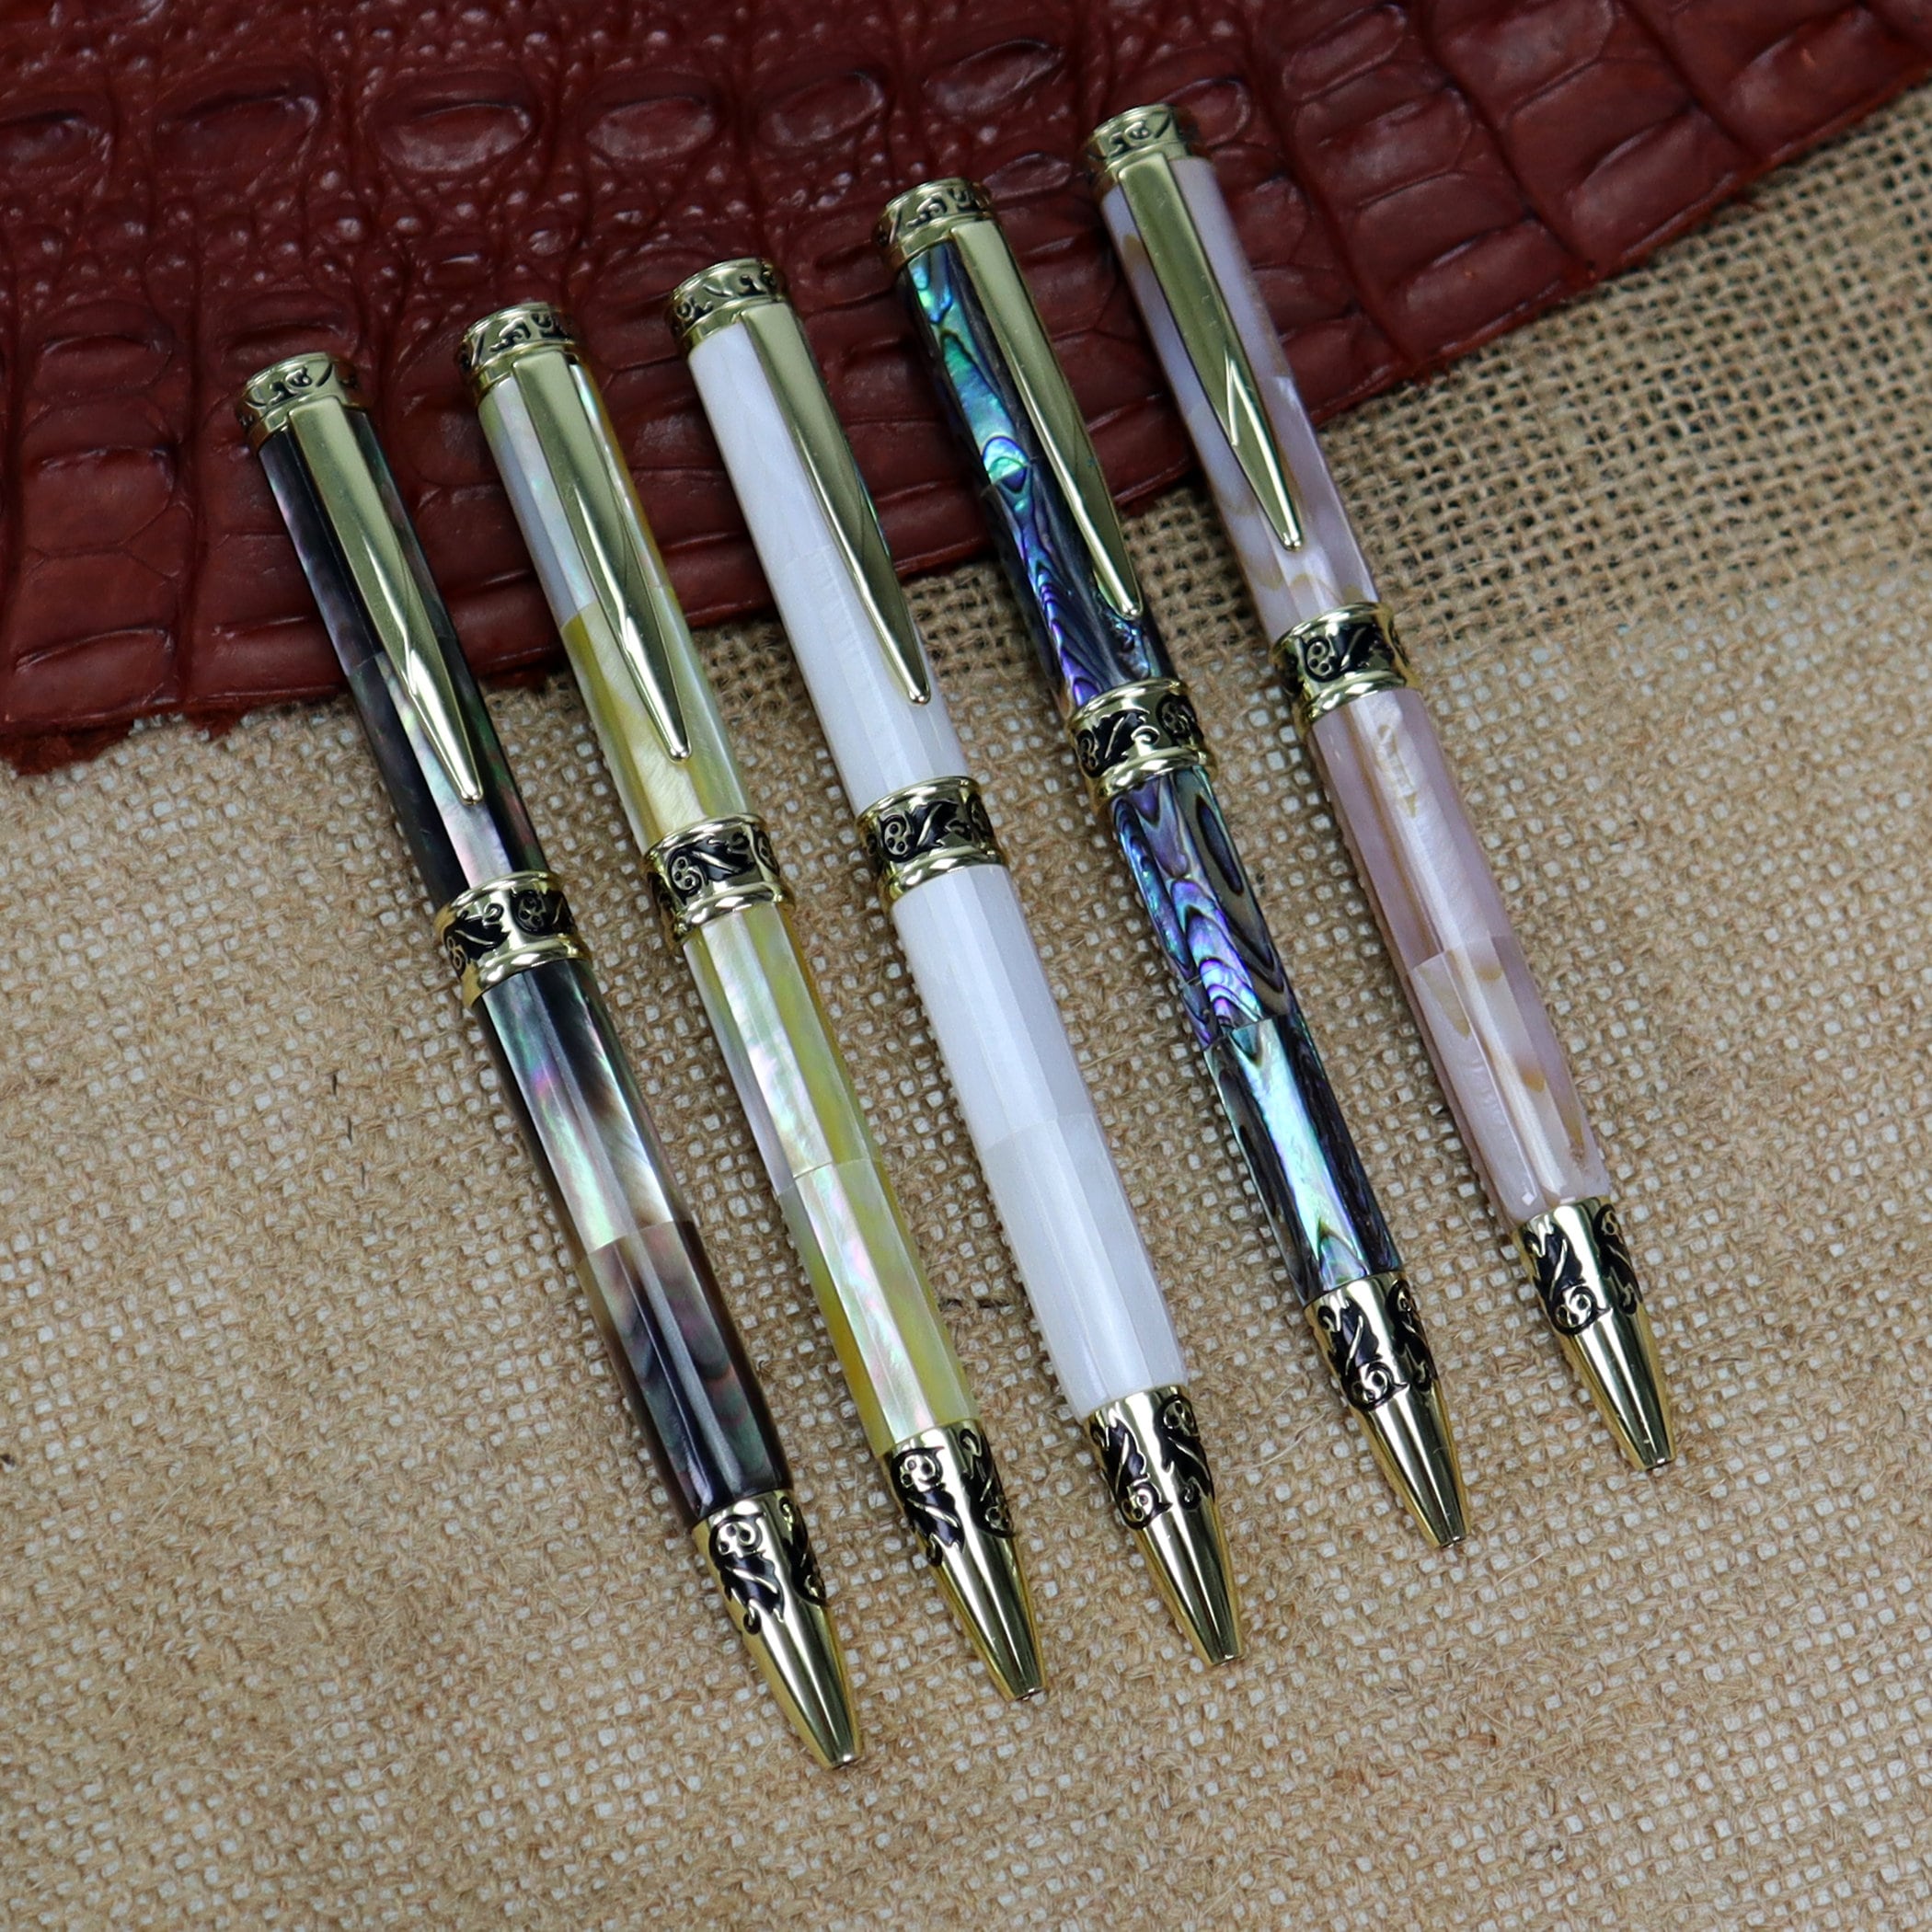 Fancy Ballpoint Pen, Golden Ballpoint Pen, Pearl Pen, Women's Gift,  Personalized Pen, Artisanal Creation, Jewel Writing Pen 